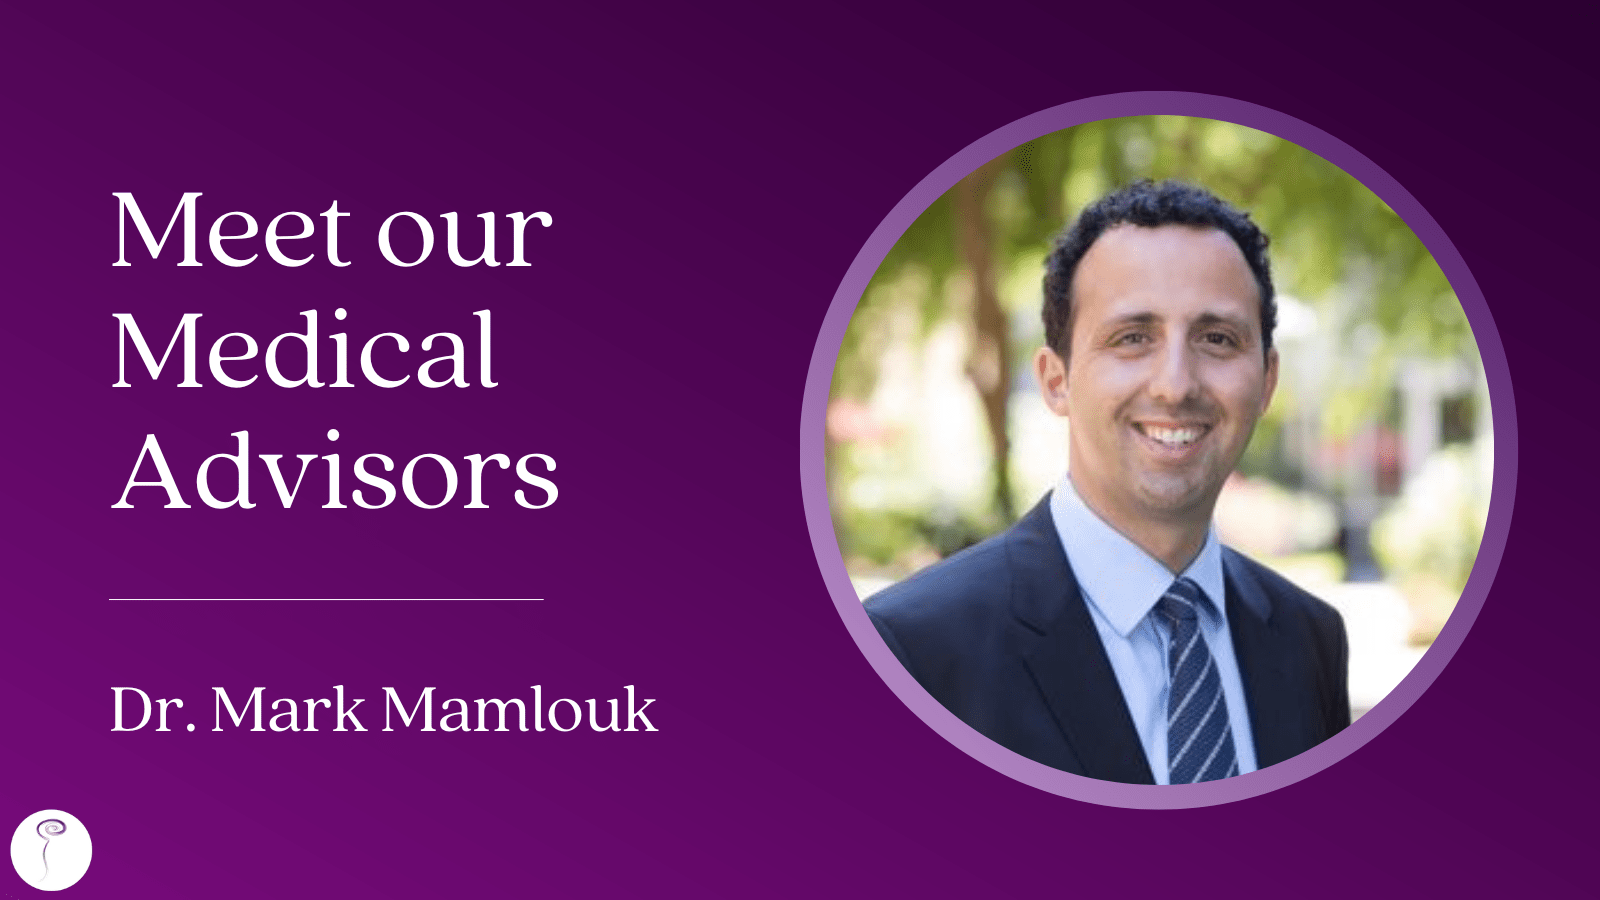 Meet our Medical Advisors: Dr. Mark Mamlouk